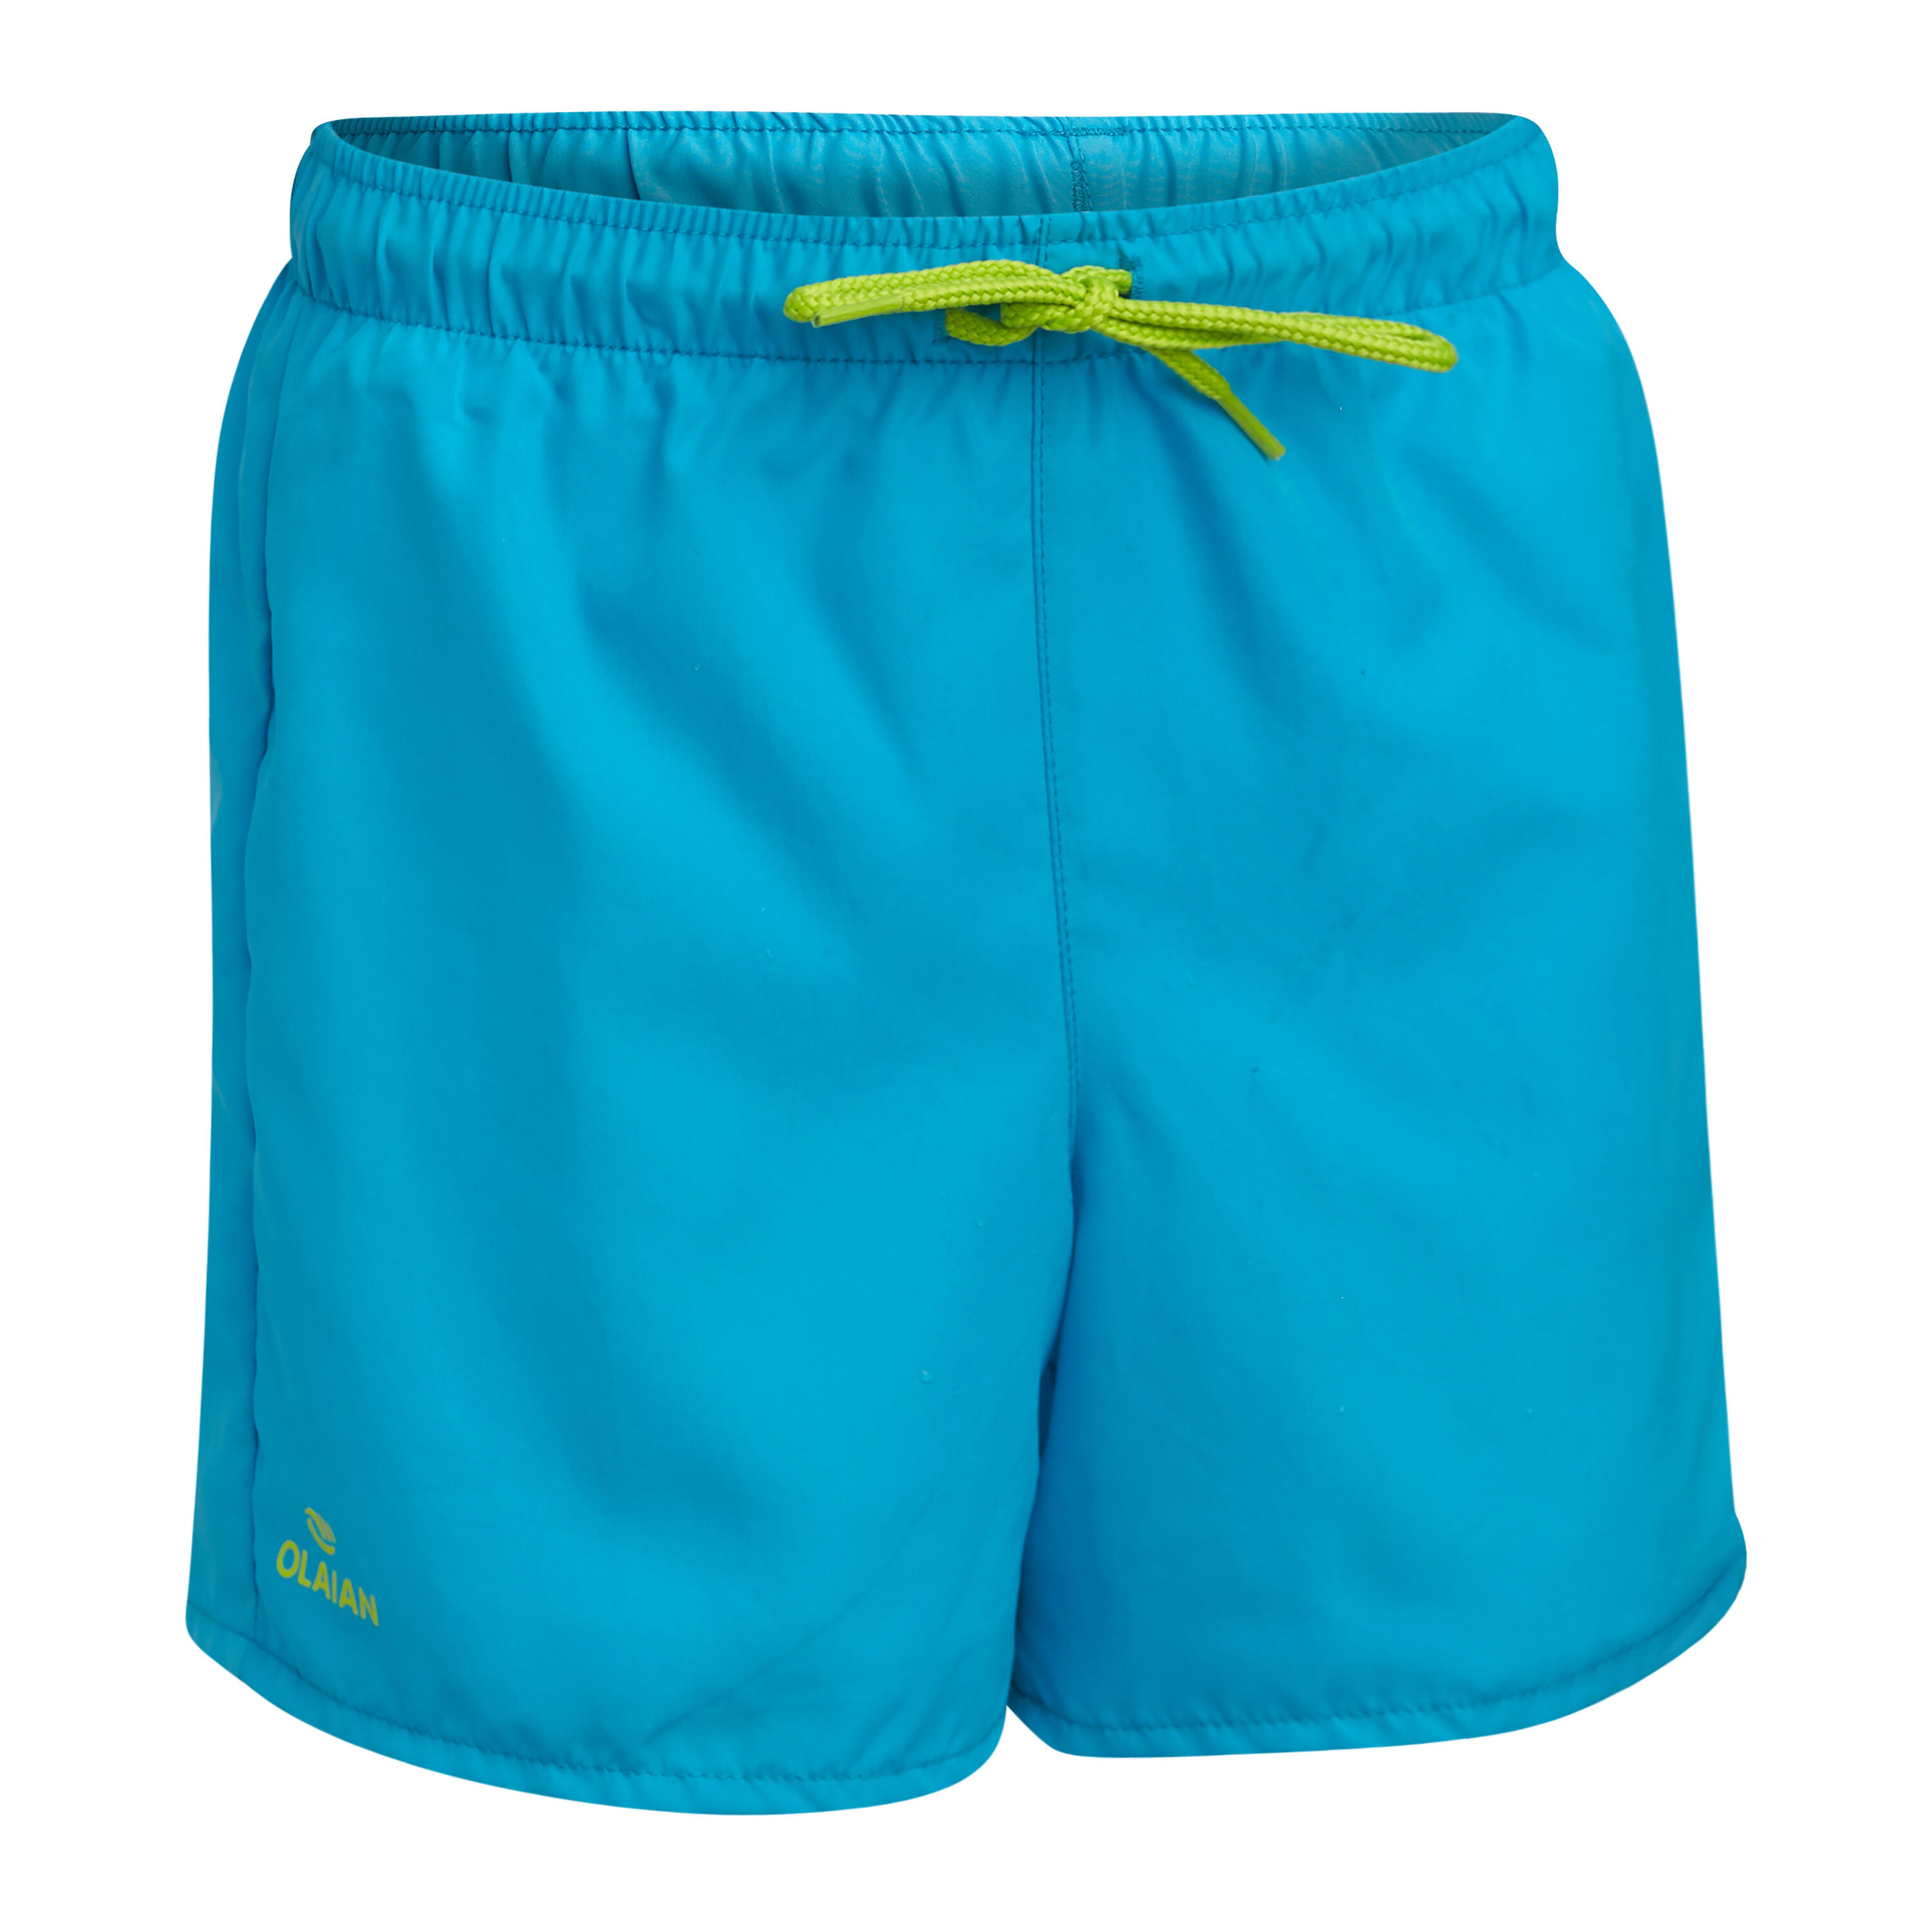 OLAIAN Swim Shorts - Turquoise blue